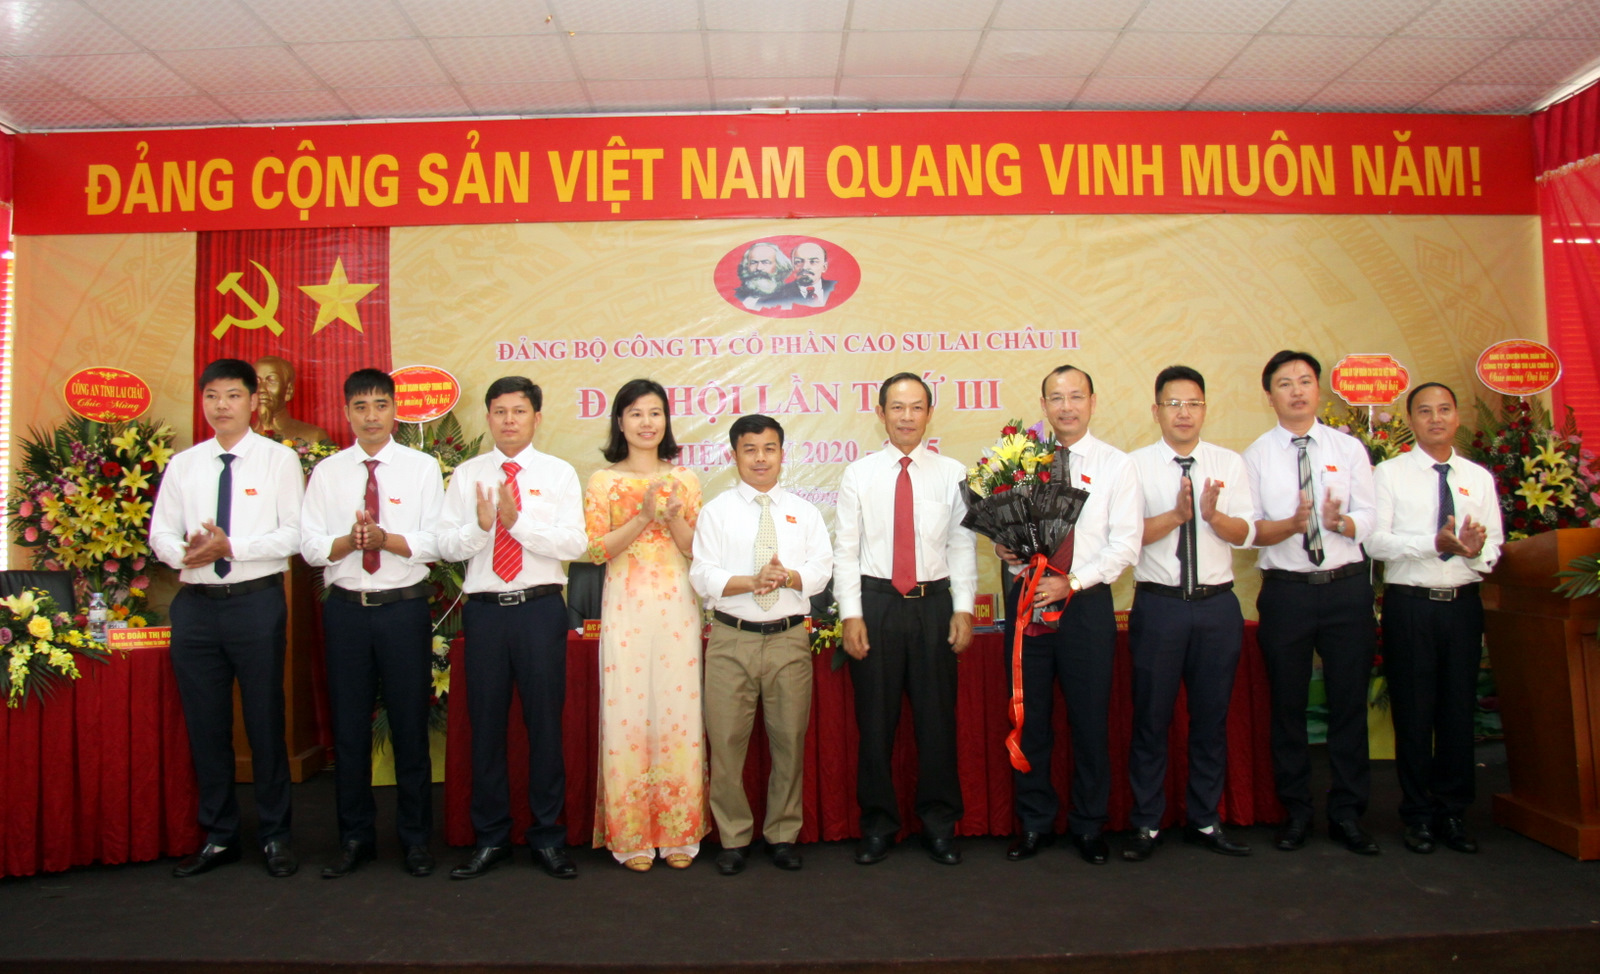 Đồng chí Trần Ngọc Thuận – Bí thư Đảng ủy, Chủ tịch HĐQT VRG tặng hoa chúc mừng Ban Chấp hành Đảng bộ Công ty Cổ phần cao su Lai Châu III, nhiệm kỳ 2020-2025.